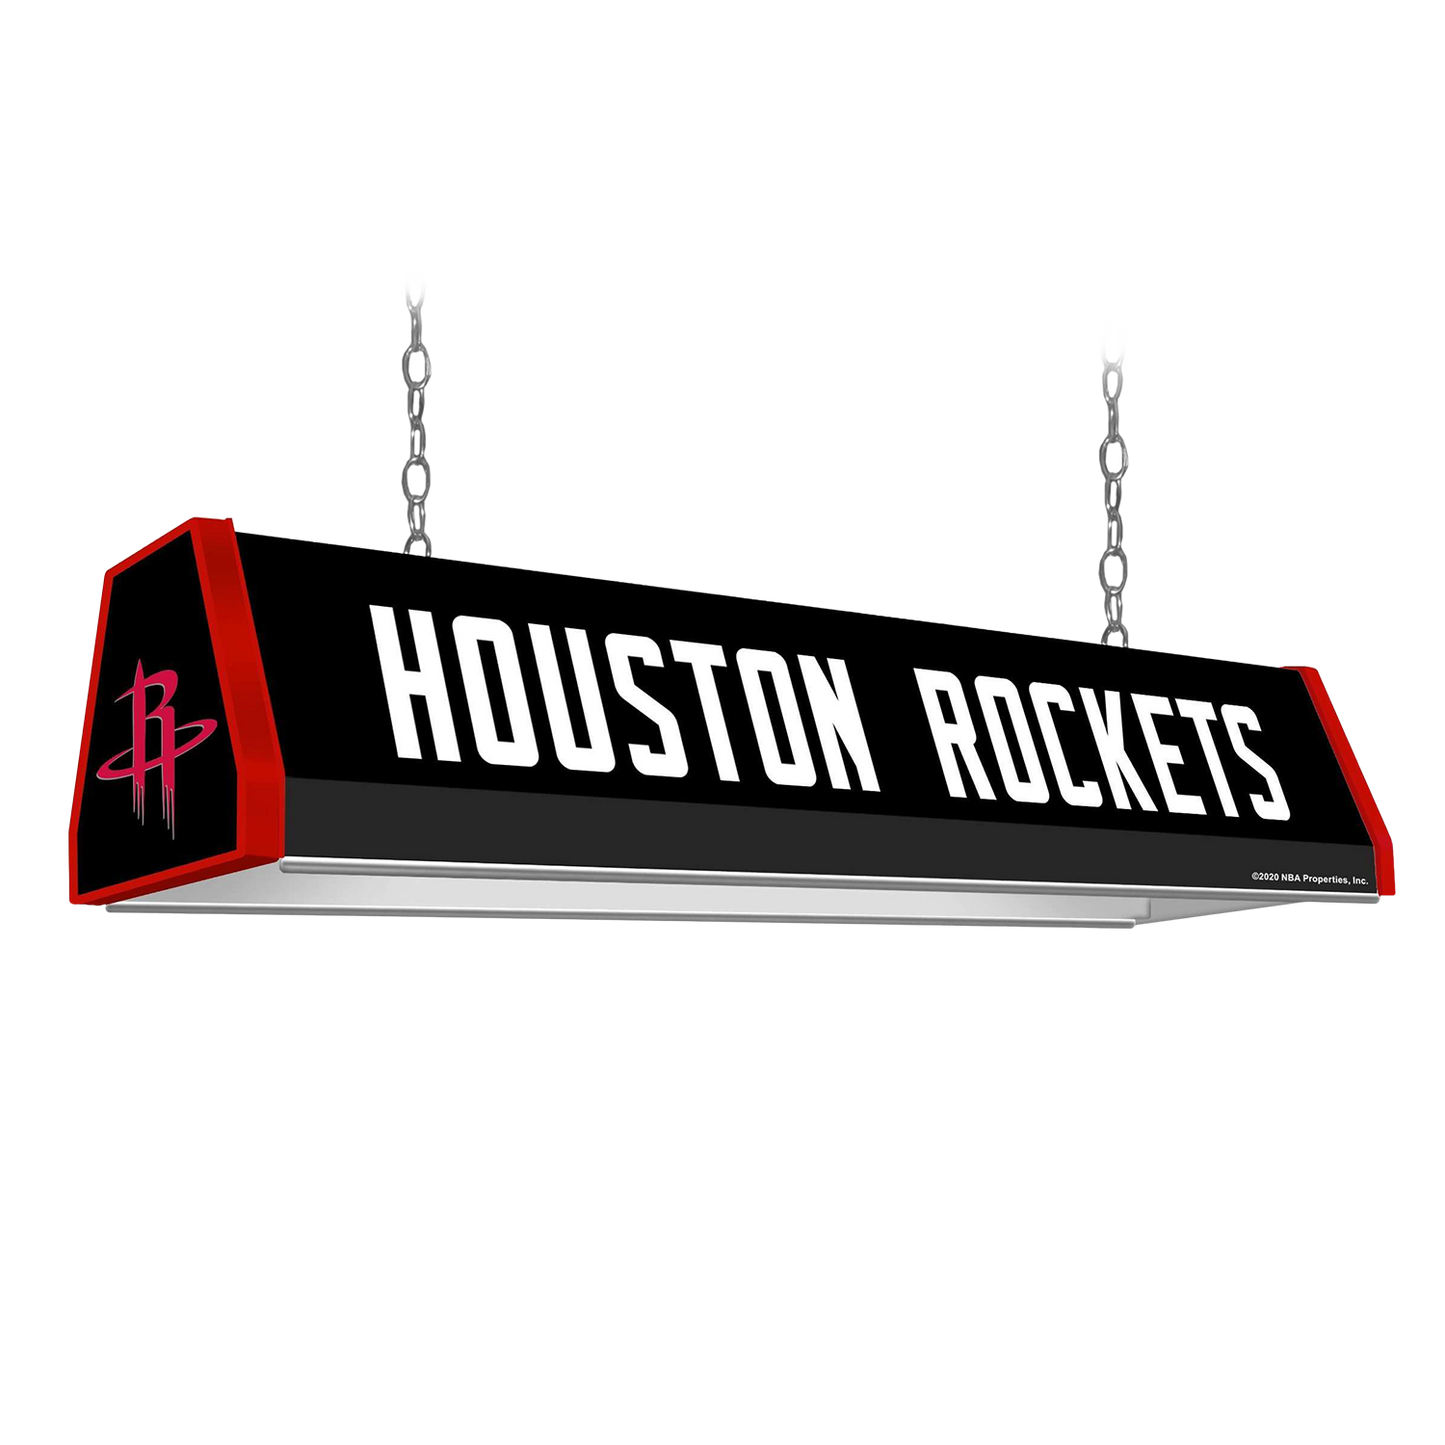 Houston Rockets: Standard Pool Table Light - The Fan-Brand